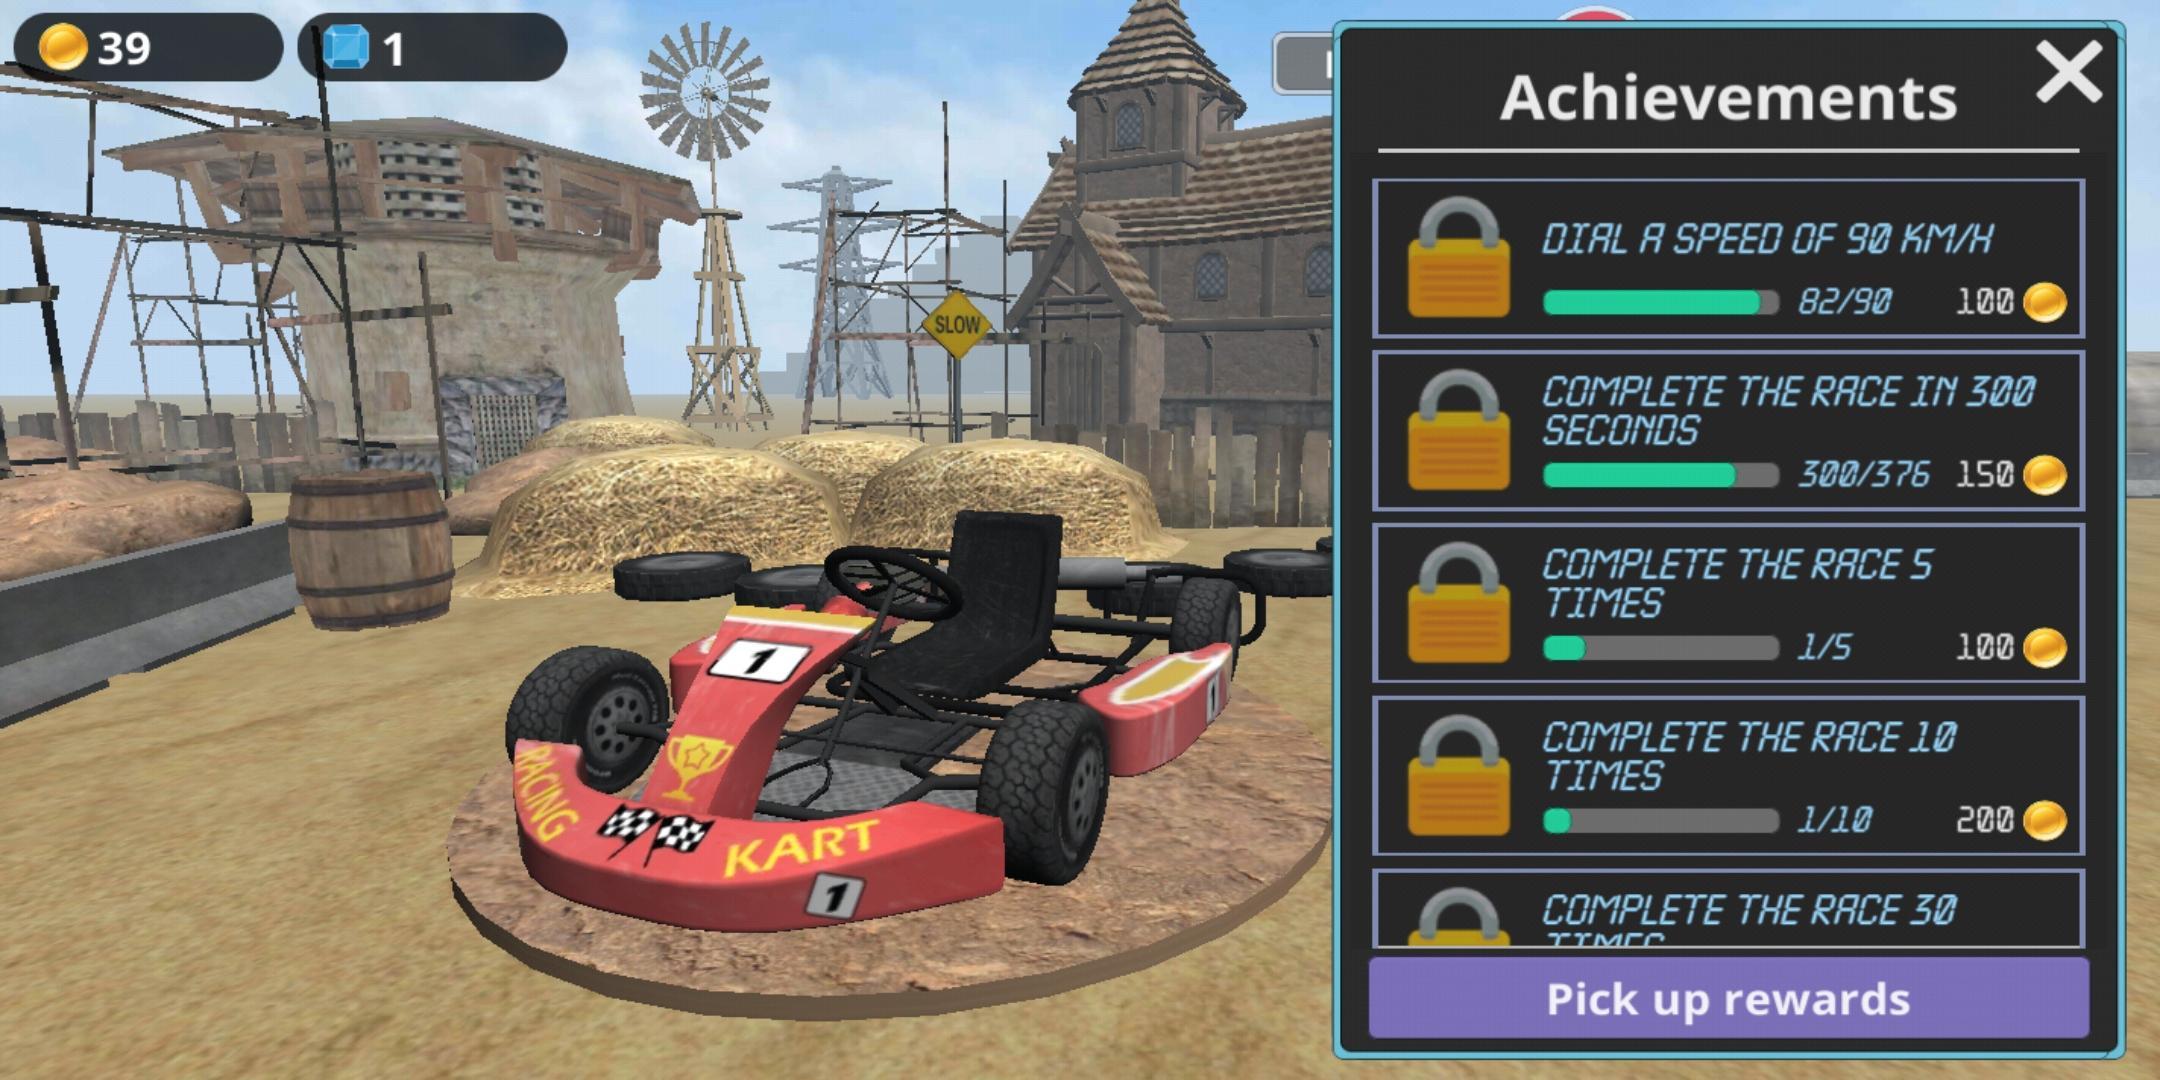 Racing Kart 3D – conquer the desert 1.7.6 Screenshot 8